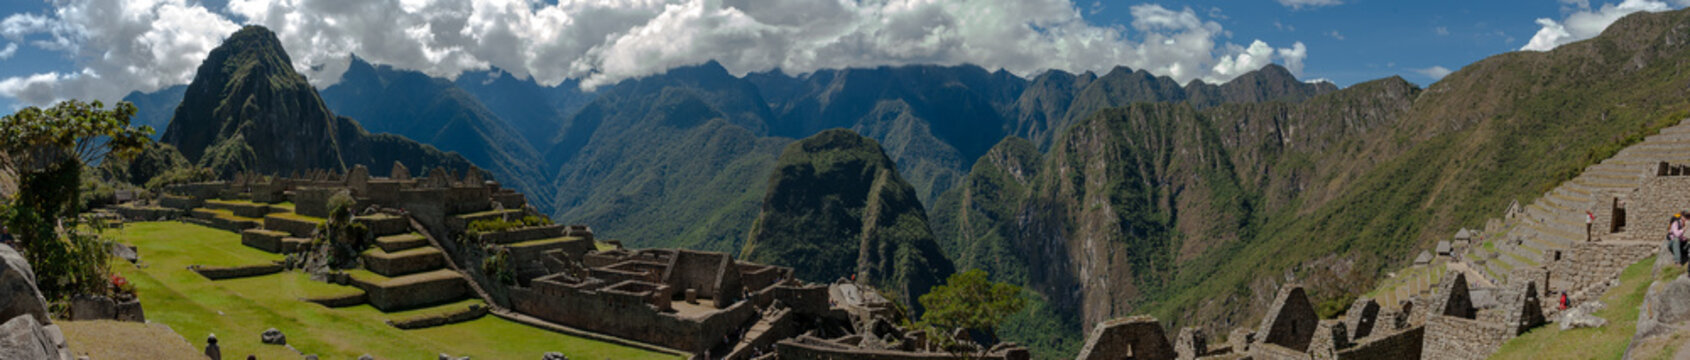 Machu Picchu panoramica